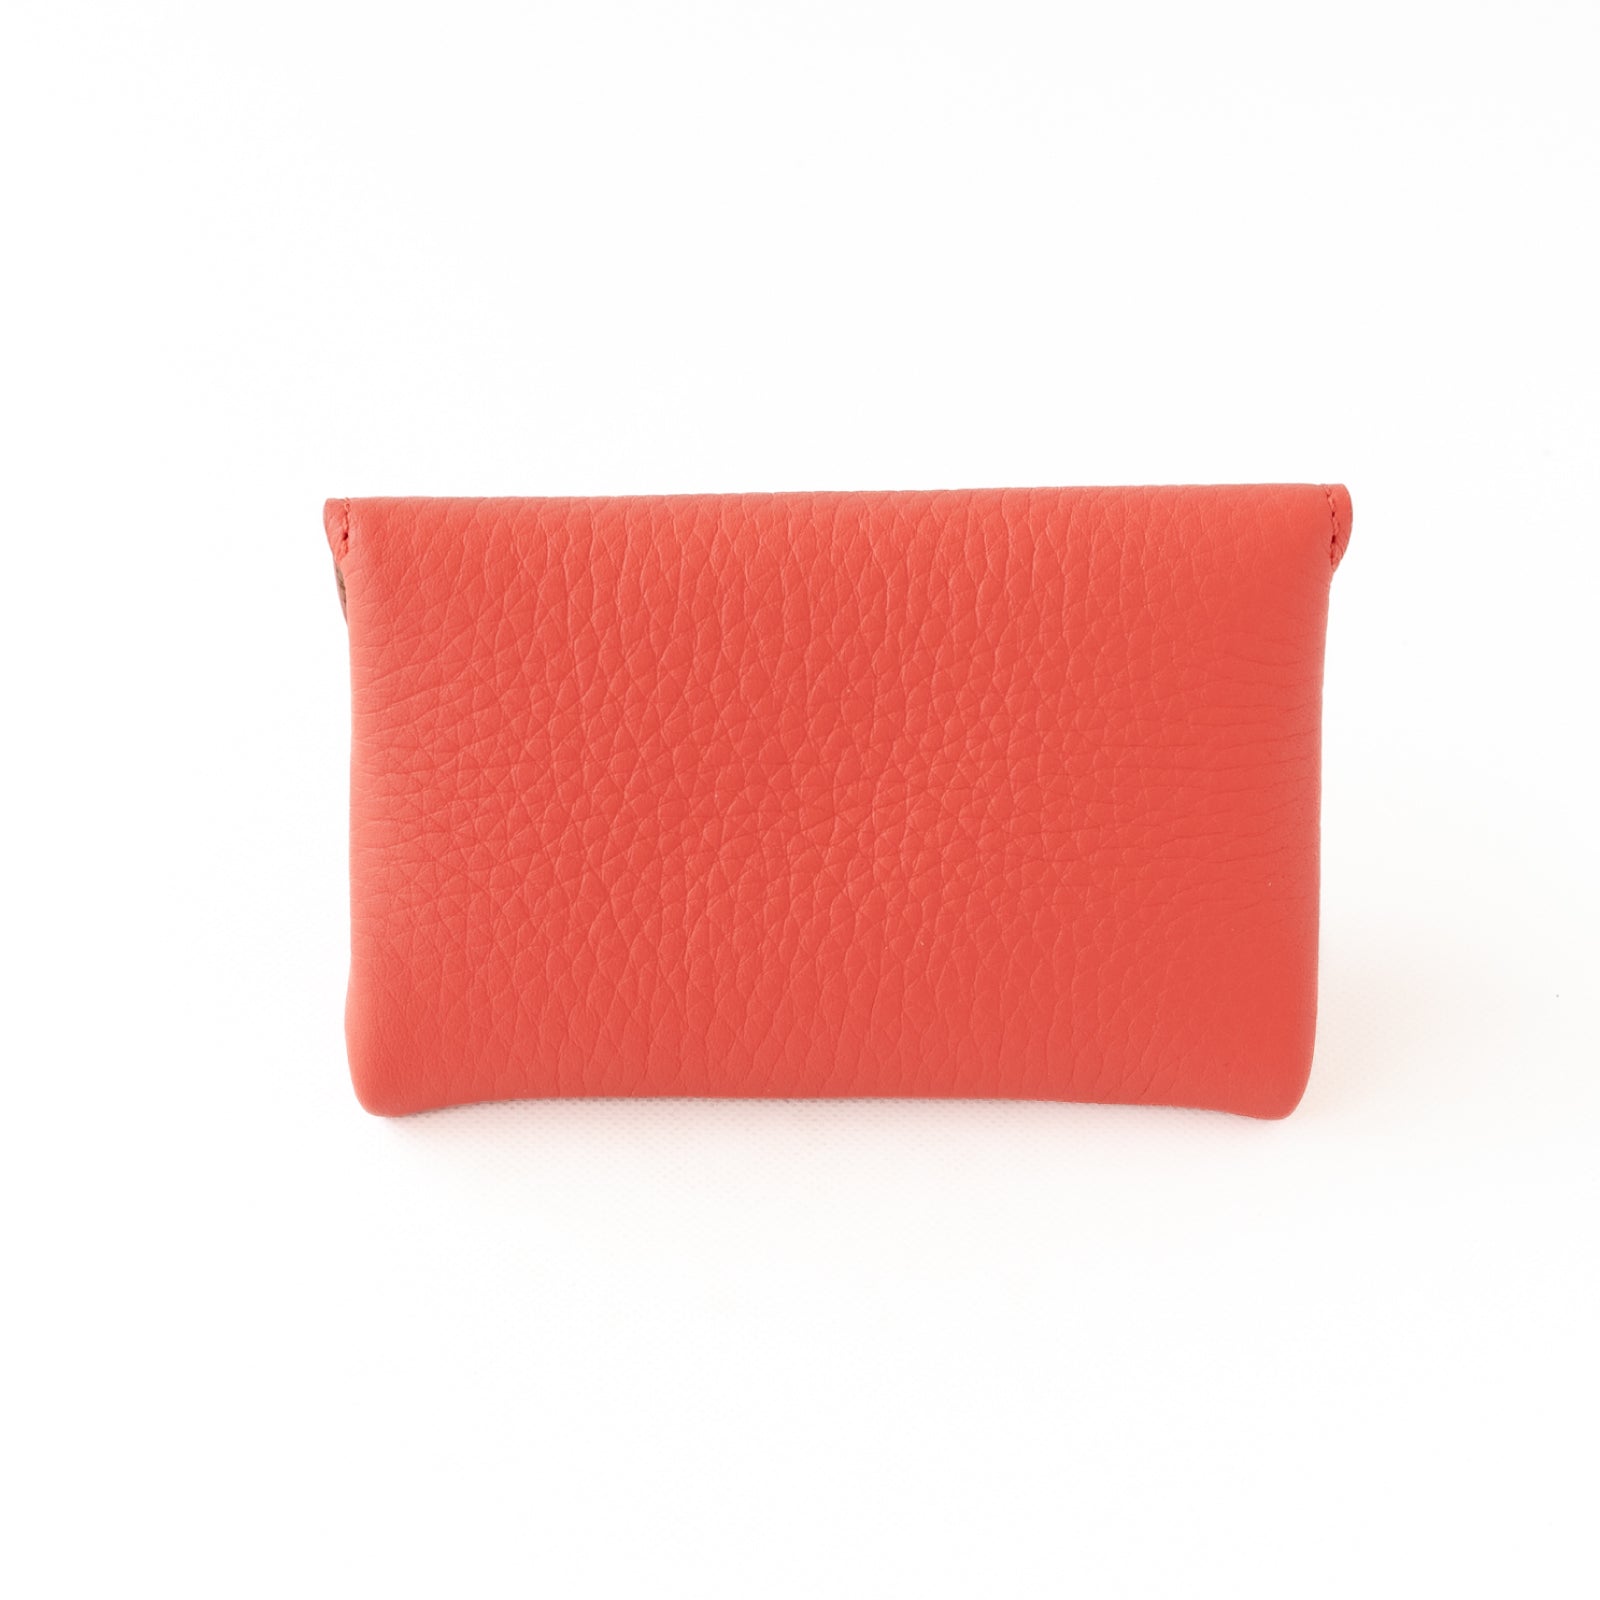 [Color order] Flap wallet fleur medium Taurillon Clemence